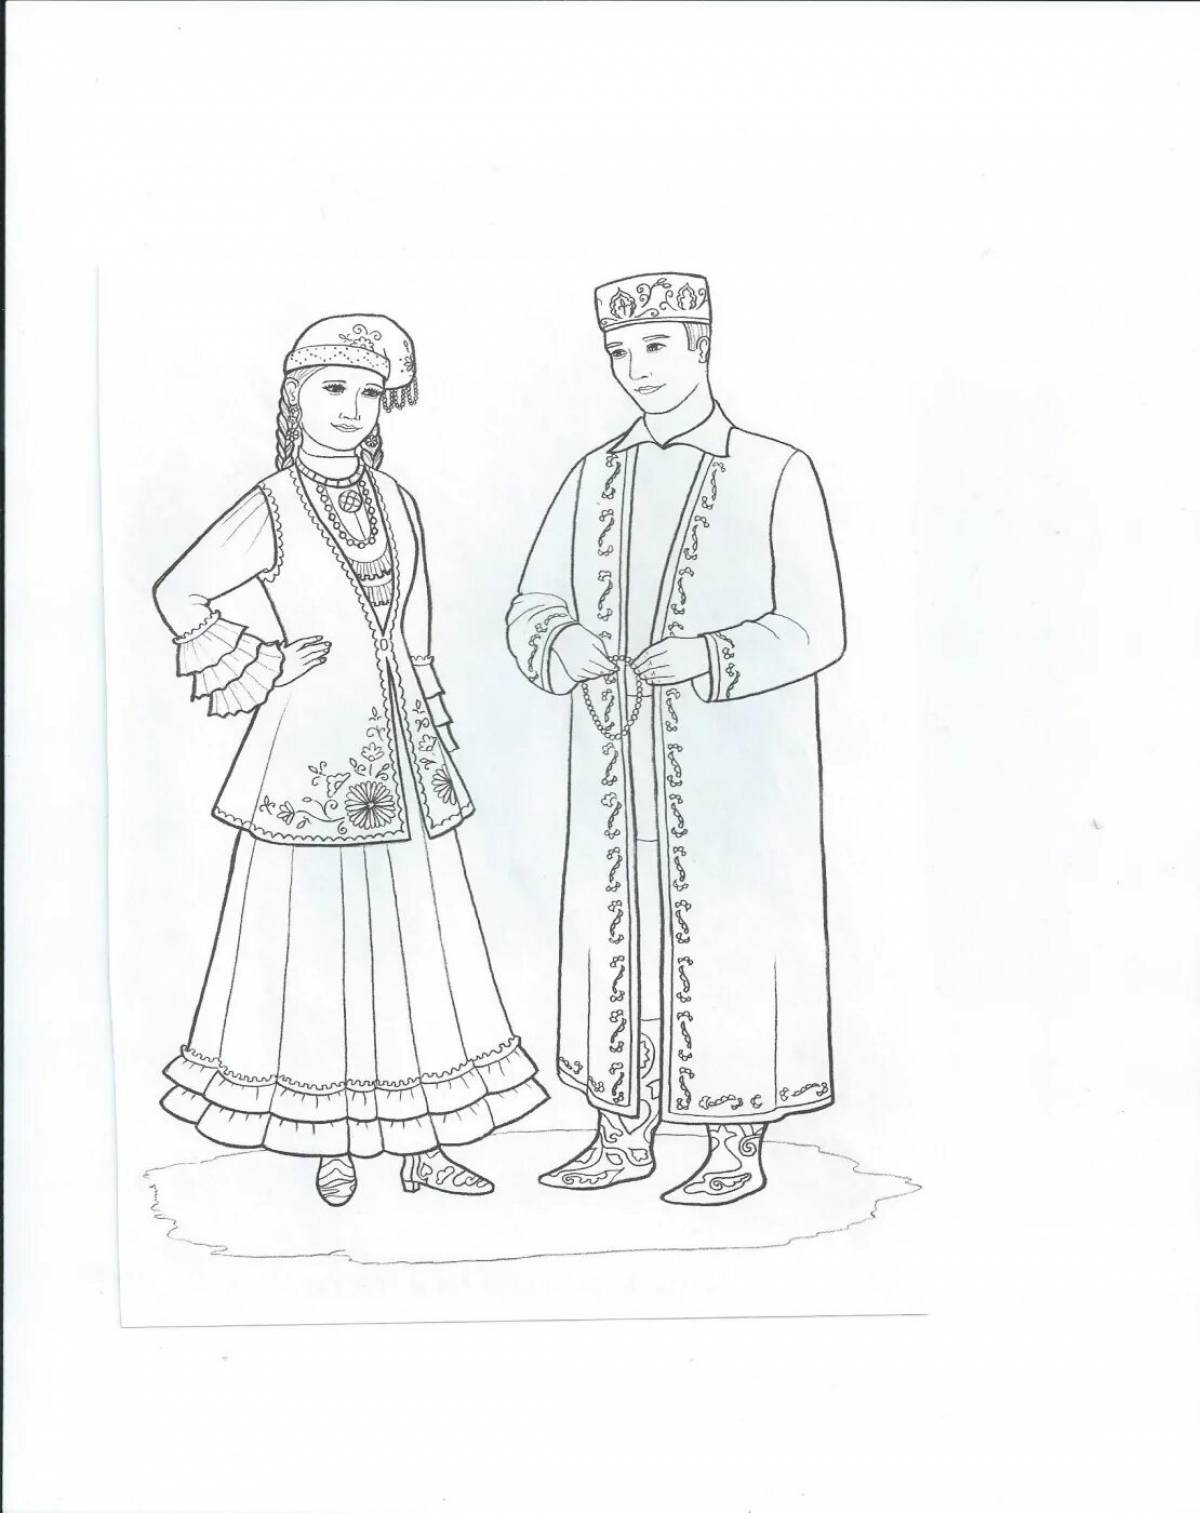 Bashkir national costume for children #10